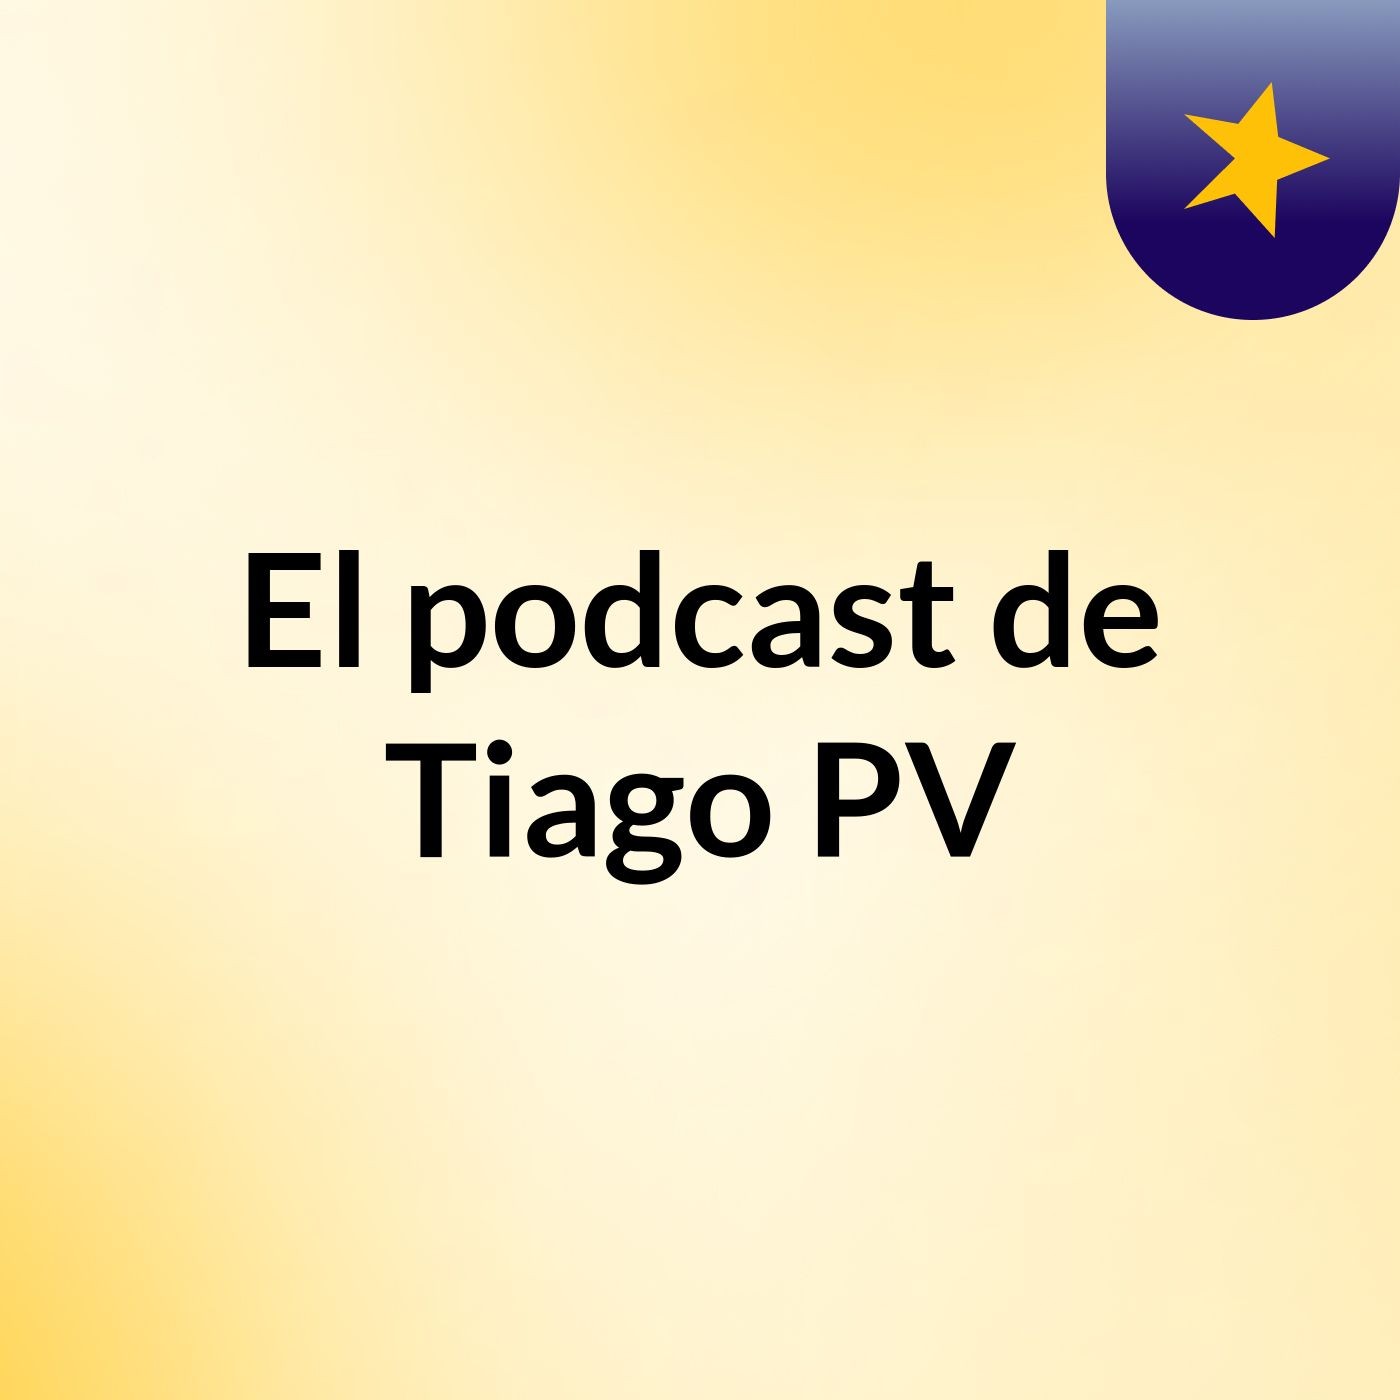 Episodio 2 - El podcast de Tiago PV